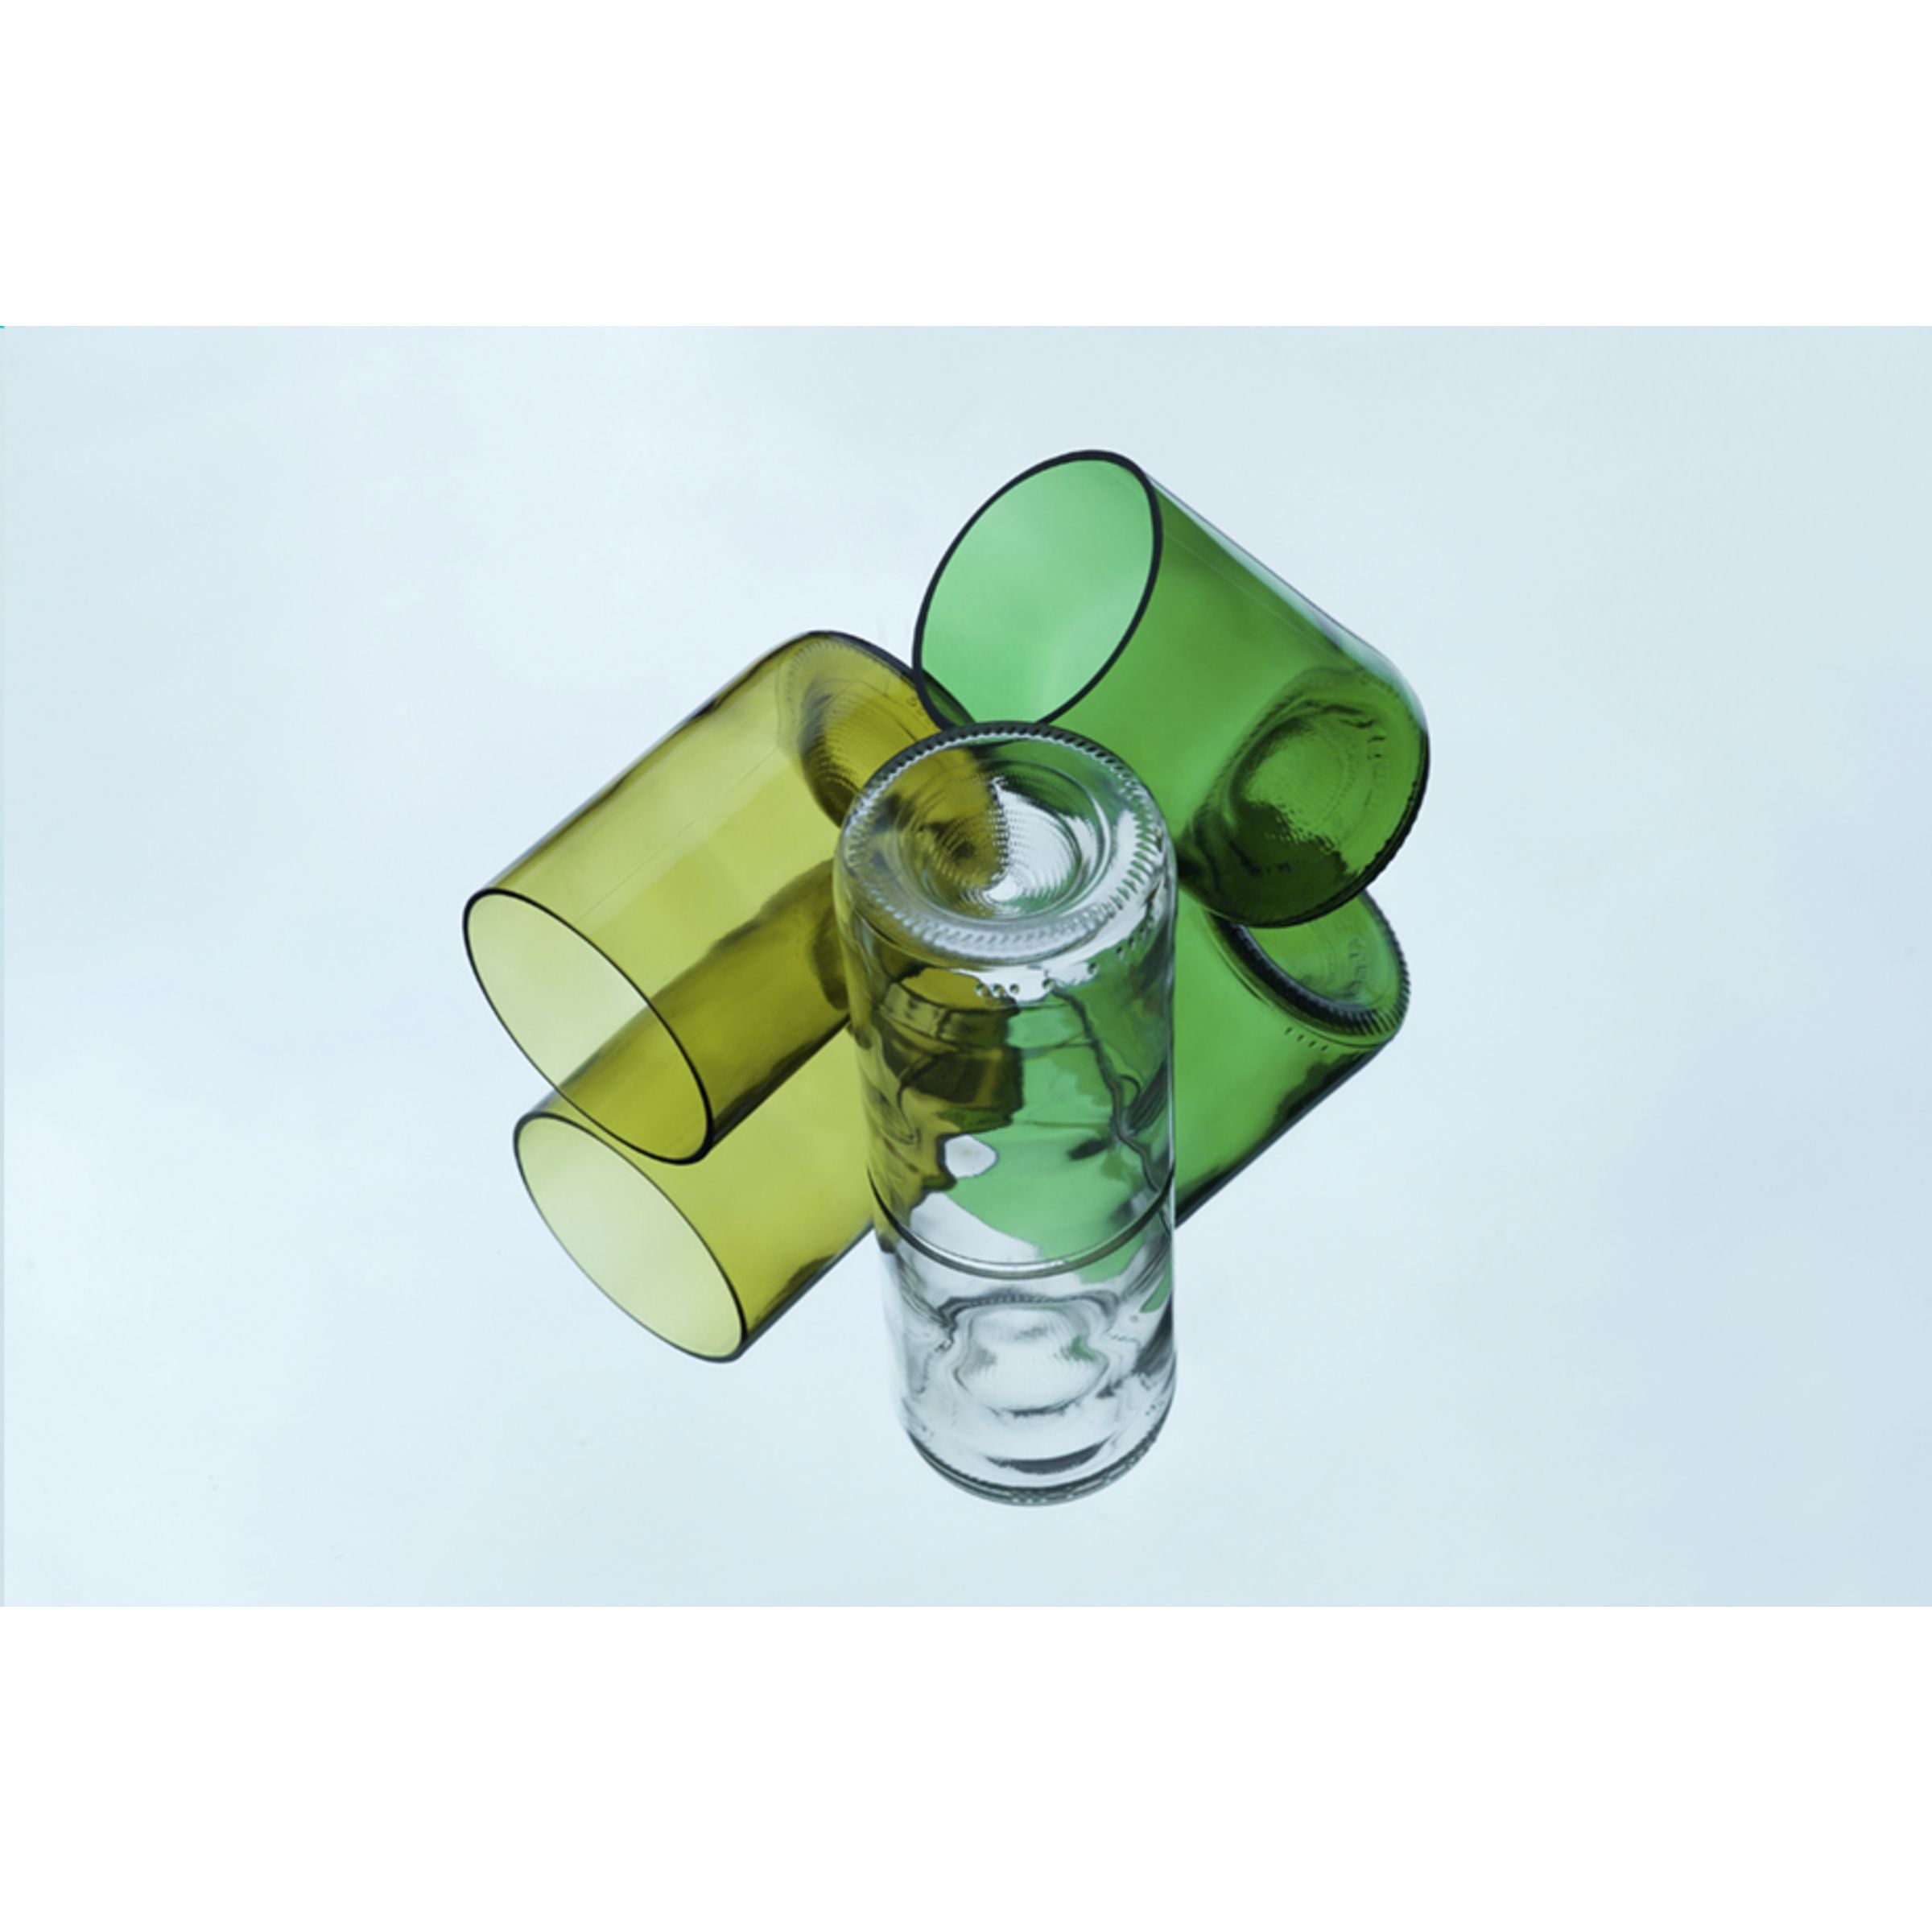 Rebottled® Branded Tumbler Drinking Glass